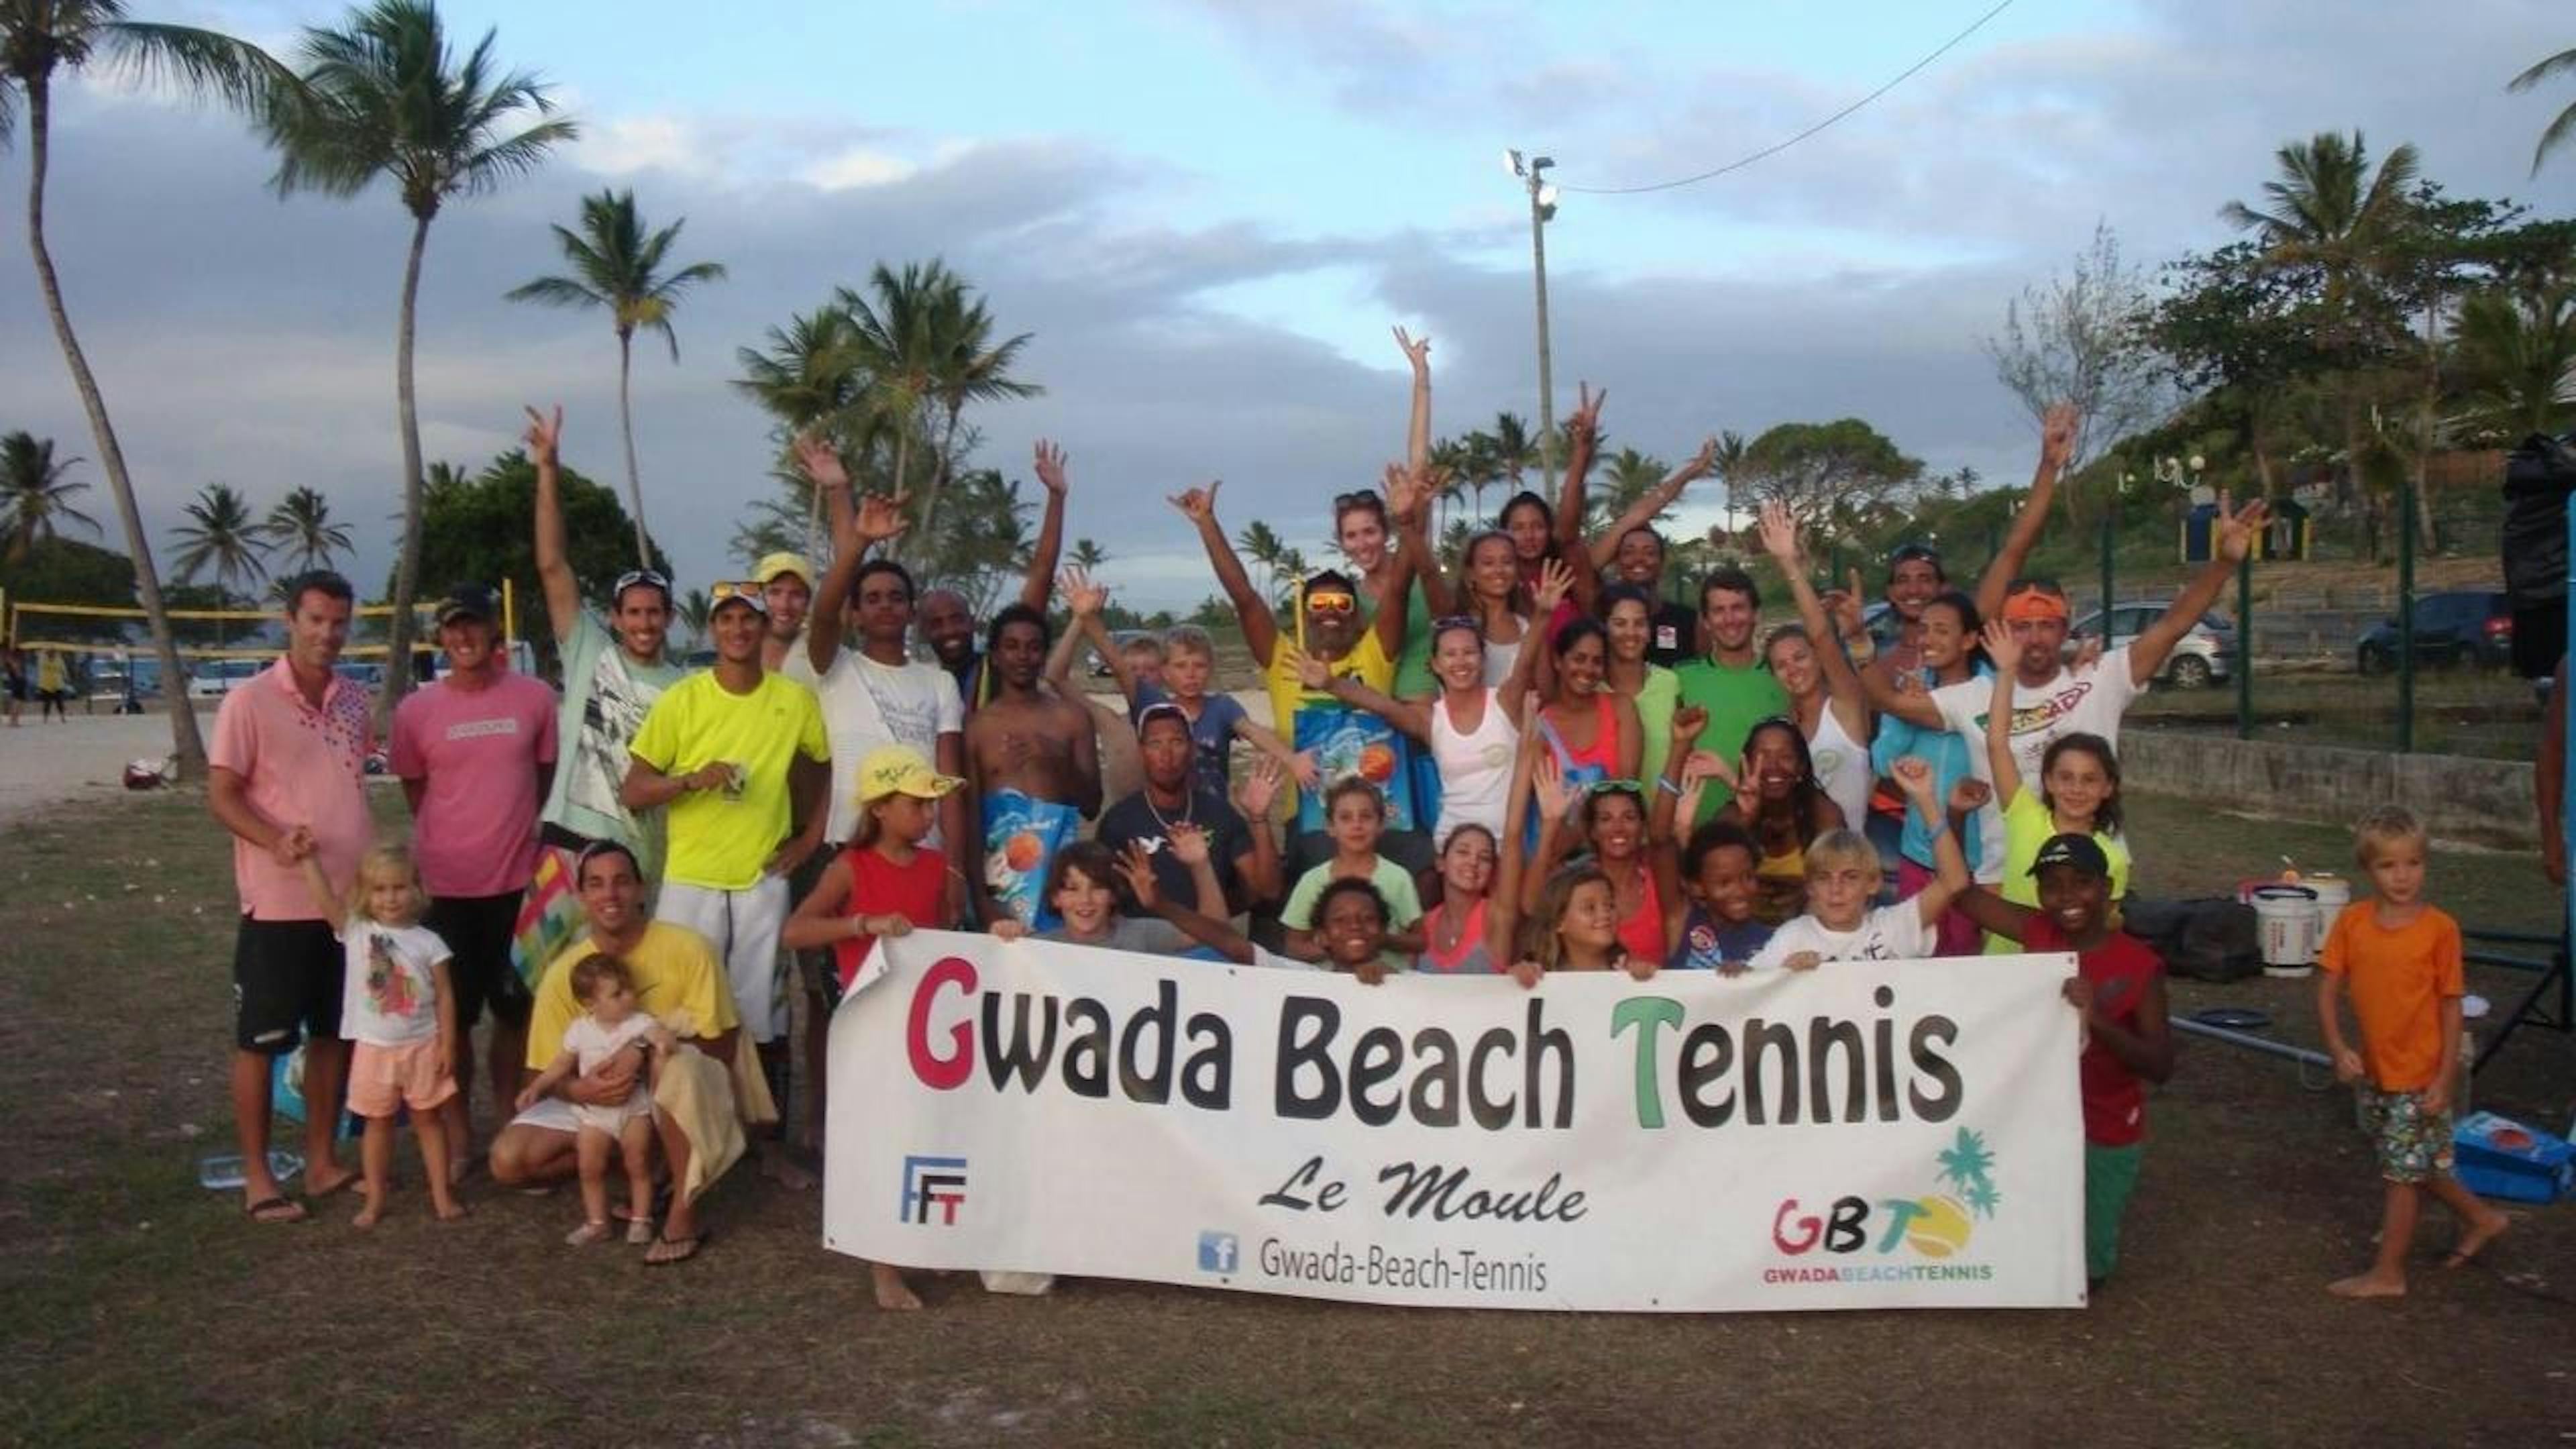 Le beach tennis monte doucement en puissance en Guadeloupe.